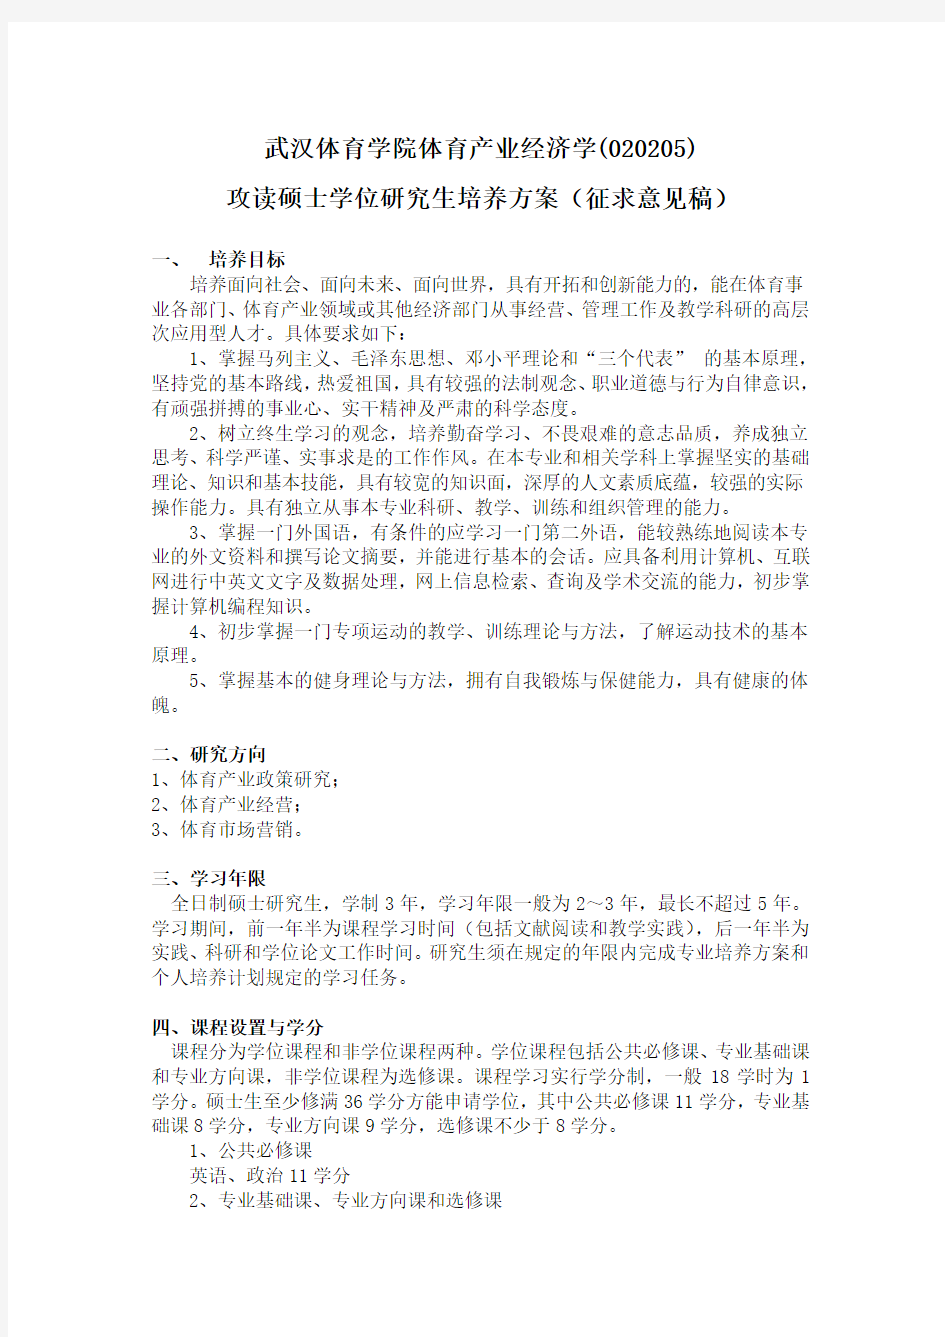 4-----武汉体育学院产业经济学硕士研究生培养方案(020205)